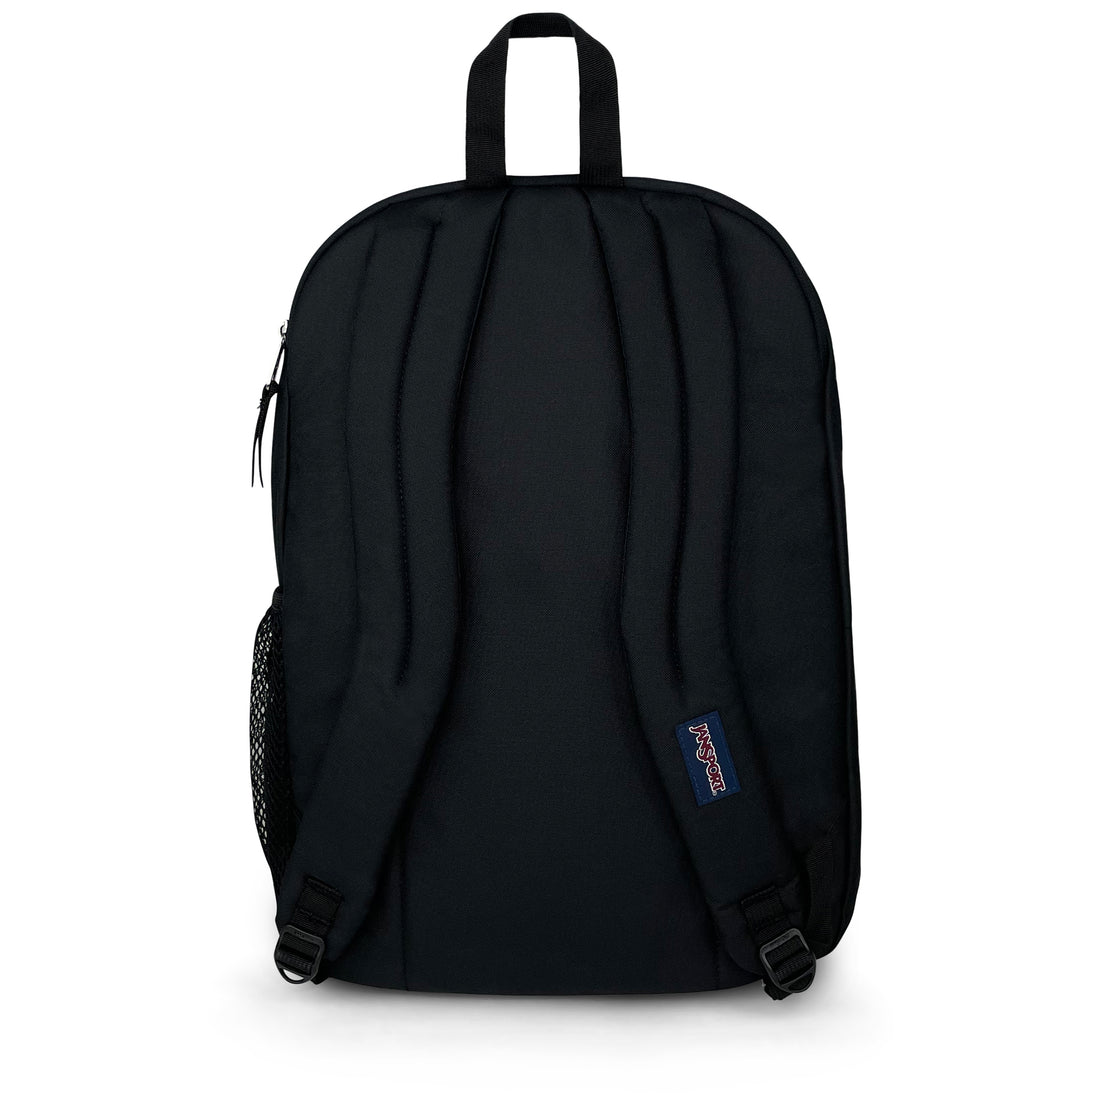 Big Student Backpack-Backpack-Jansport-Black-SchoolBagsAndStuff